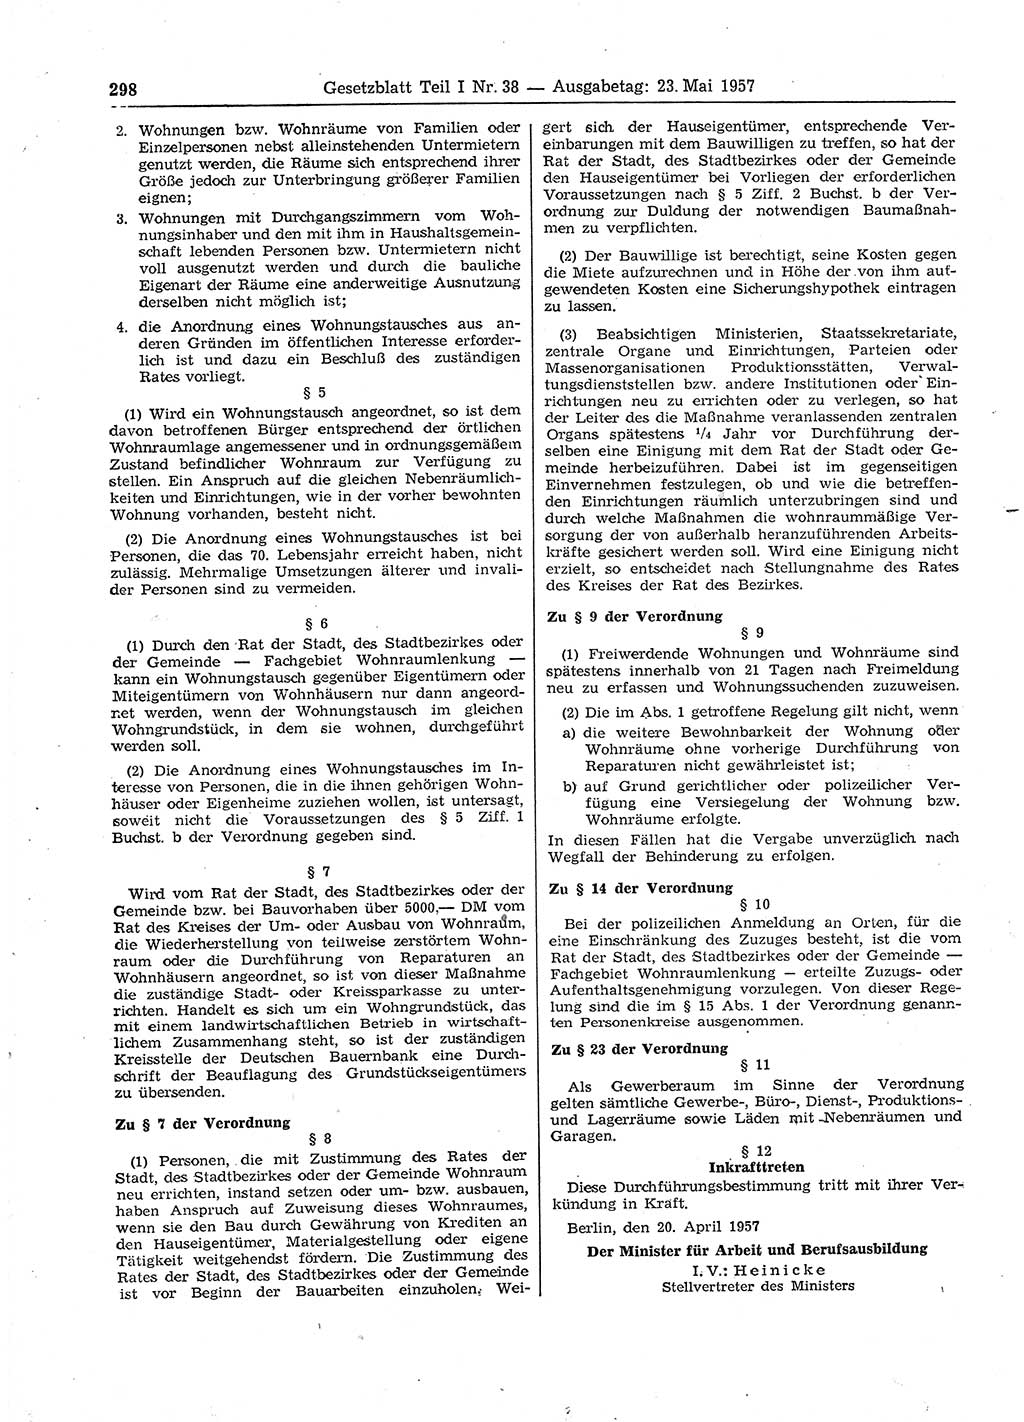 Gesetzblatt (GBl.) der Deutschen Demokratischen Republik (DDR) Teil Ⅰ 1957, Seite 298 (GBl. DDR Ⅰ 1957, S. 298)